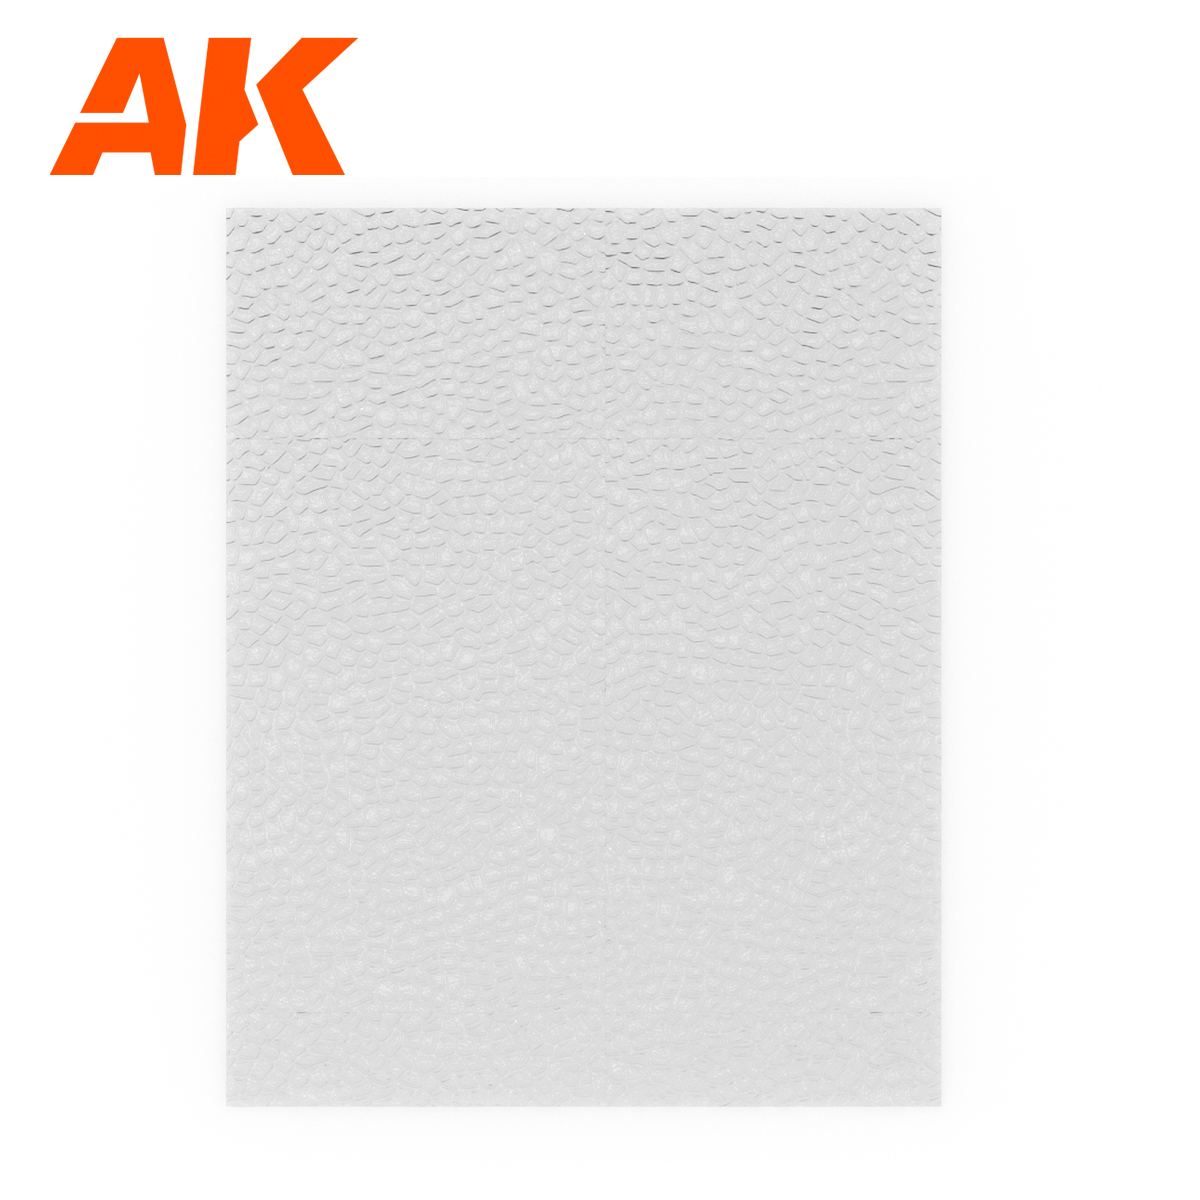 Water Sheet Transparent Still Water 245 x 195mm / 9.64 x 7.68 “  – TEXTURED ACRYLIC SHEET – 1 Unit 